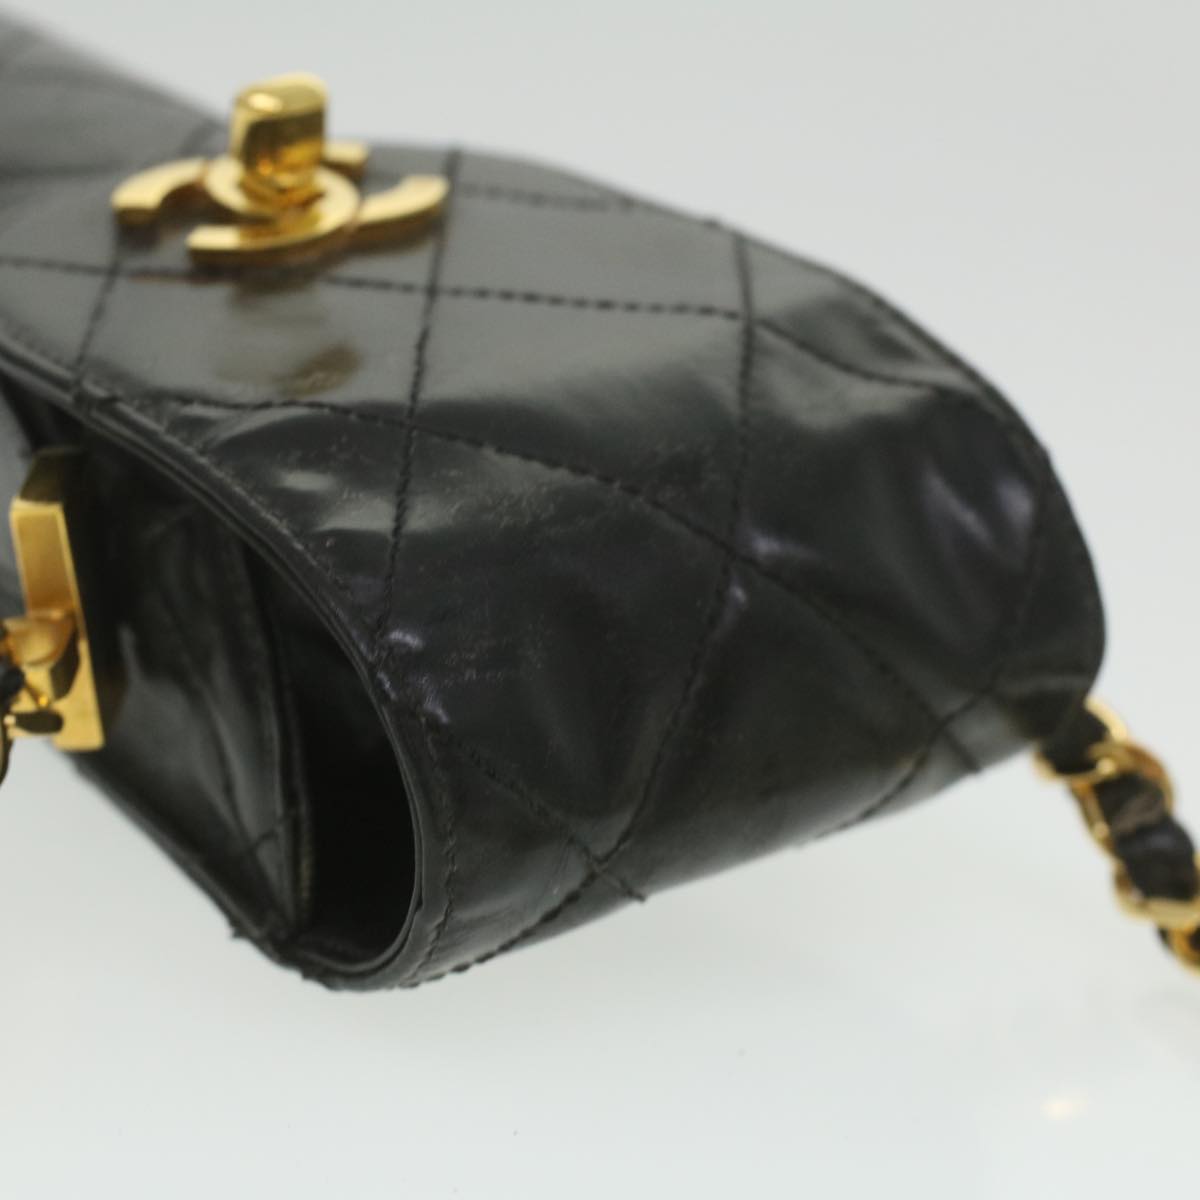 CHANEL Matelasse Chain Shoulder Bag Enamel Black CC Auth bs4141